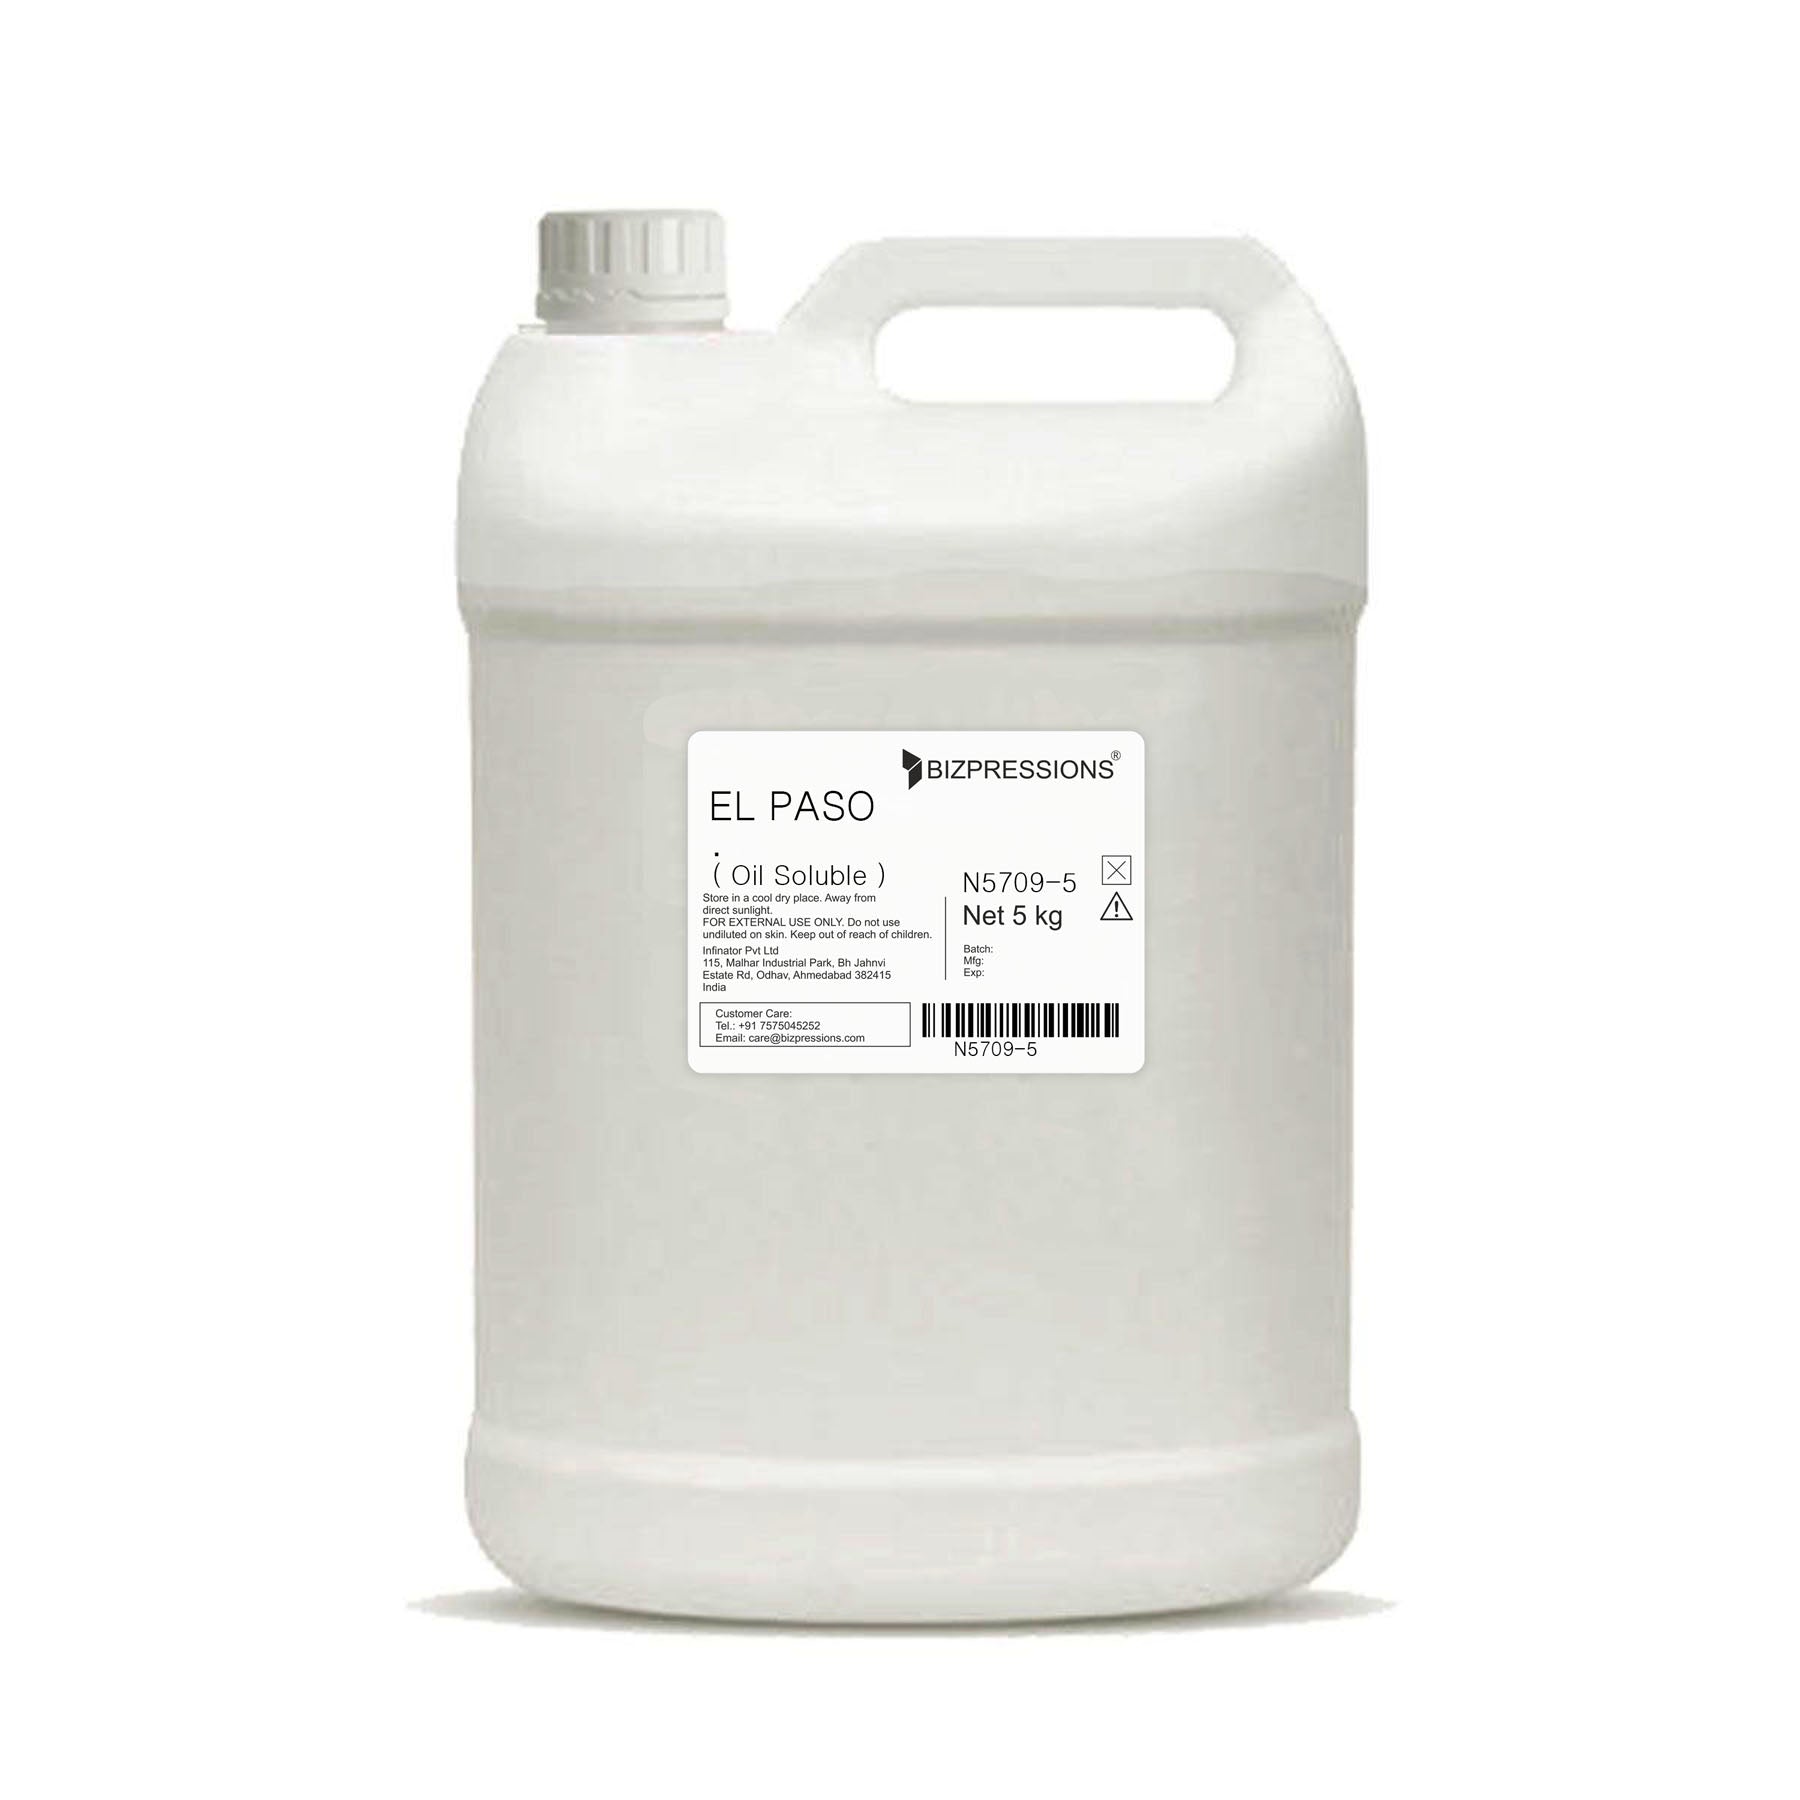 EL PASO - Fragrance ( Oil Soluble ) - 5 kg